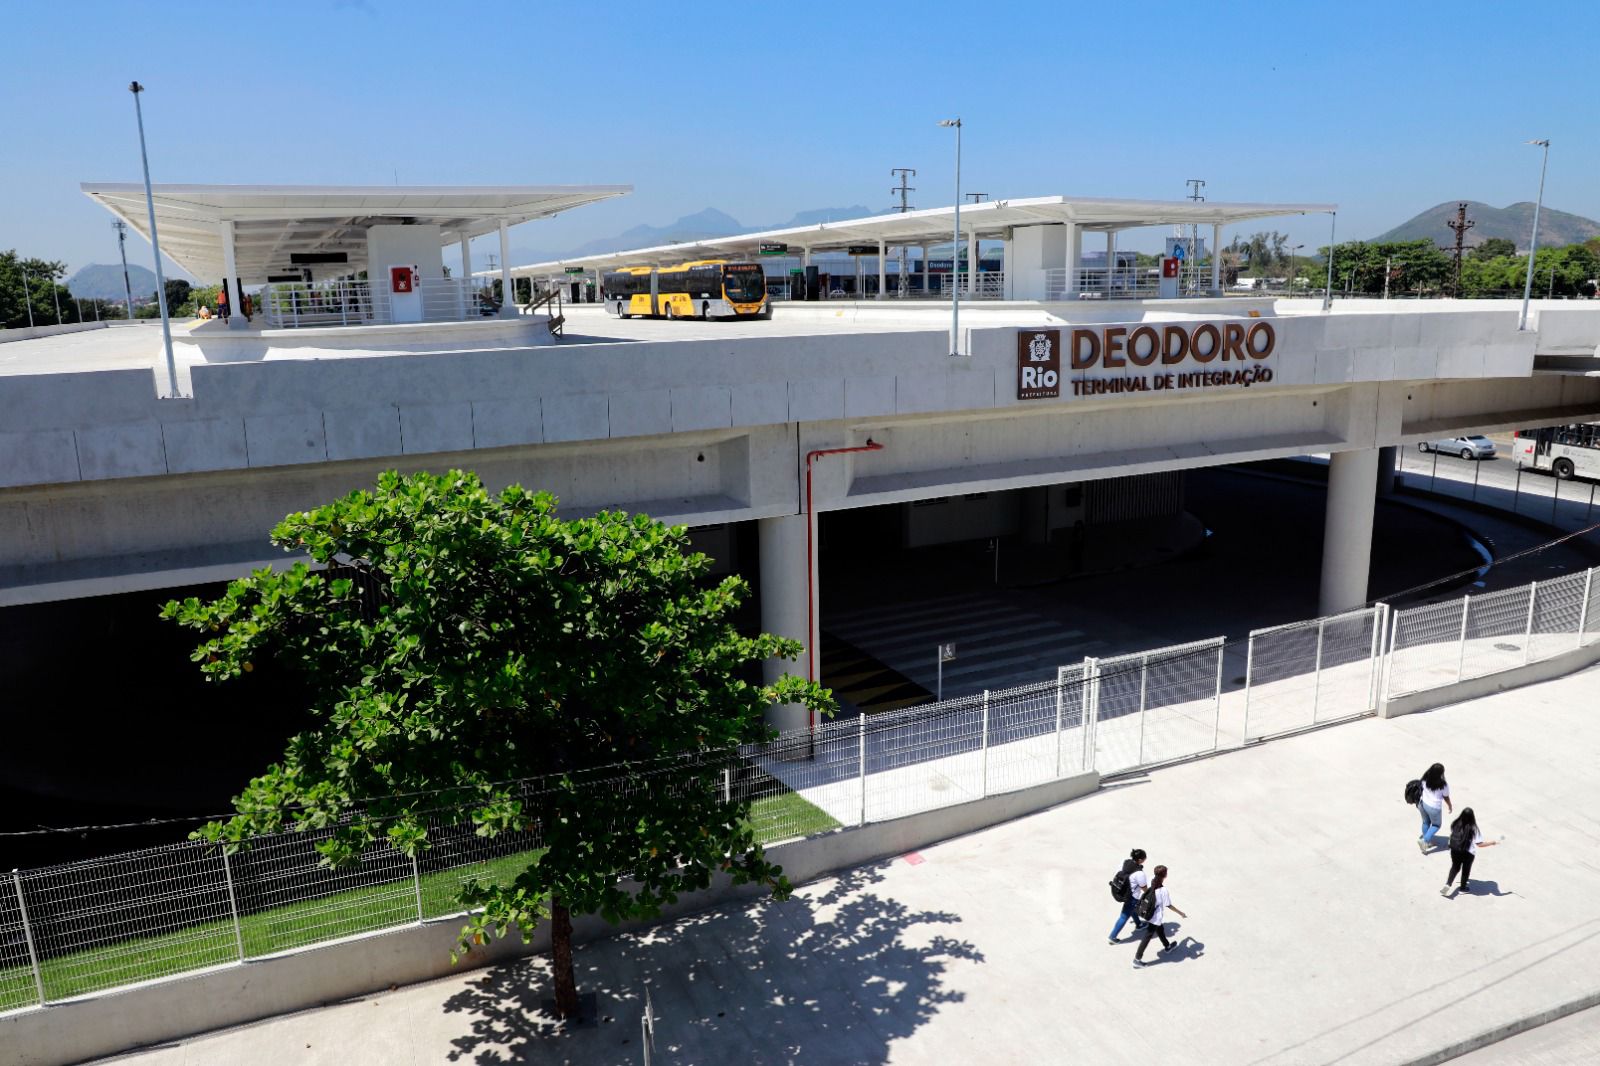 Terminal Teodoro recebe duas novas linhas de ônibus.